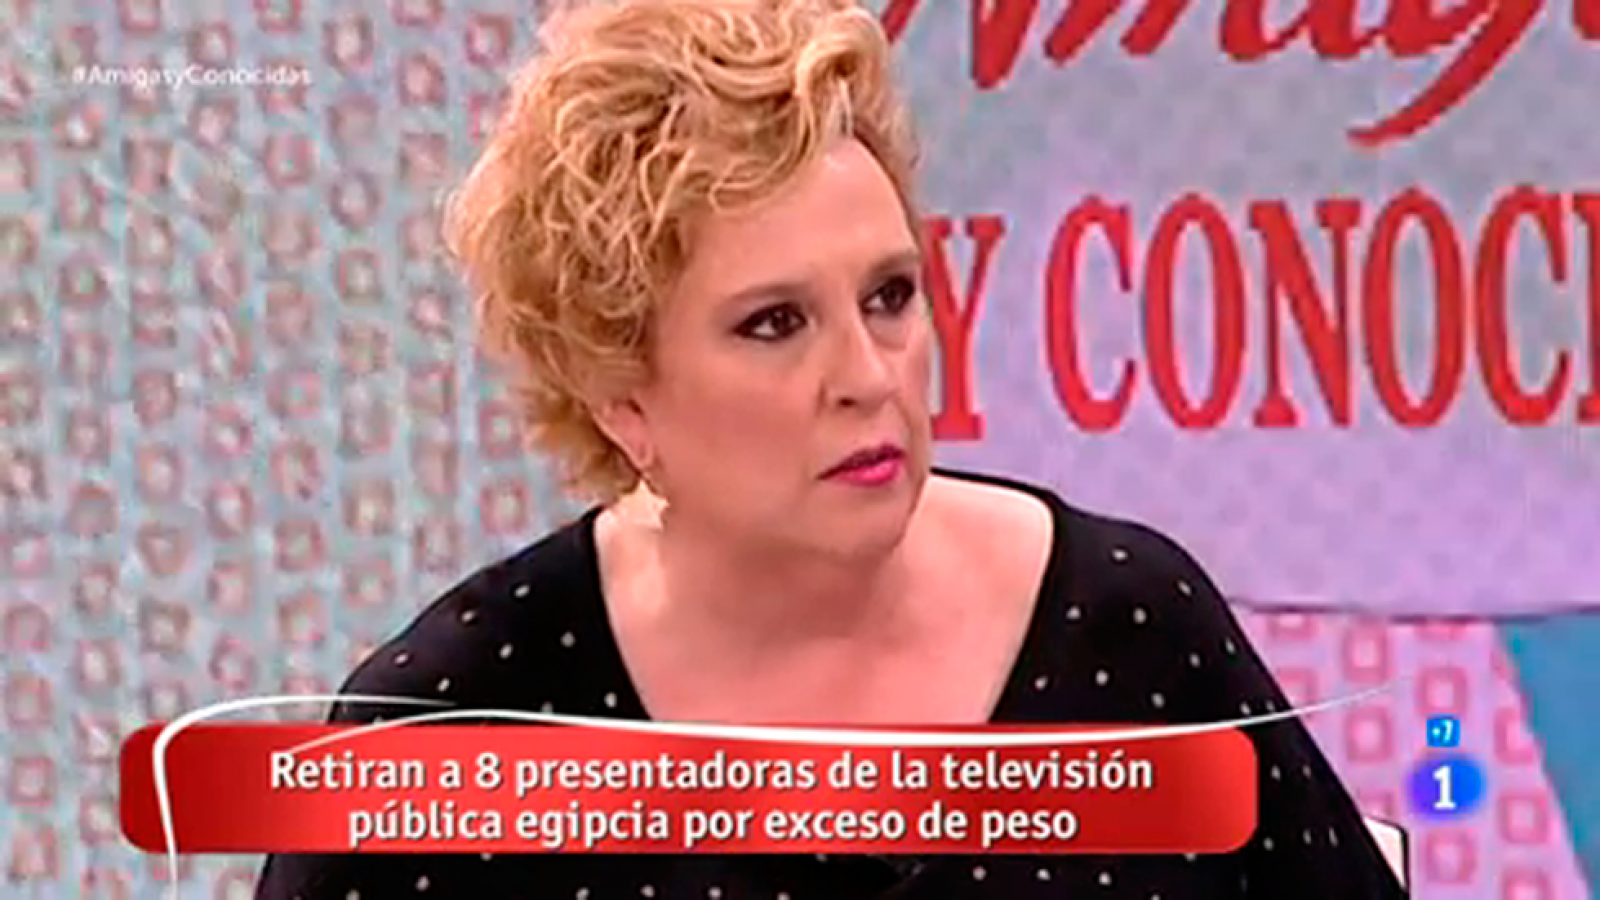 El alegato de Silvia Tarragona en defensa de las mujeres con sobrepeso